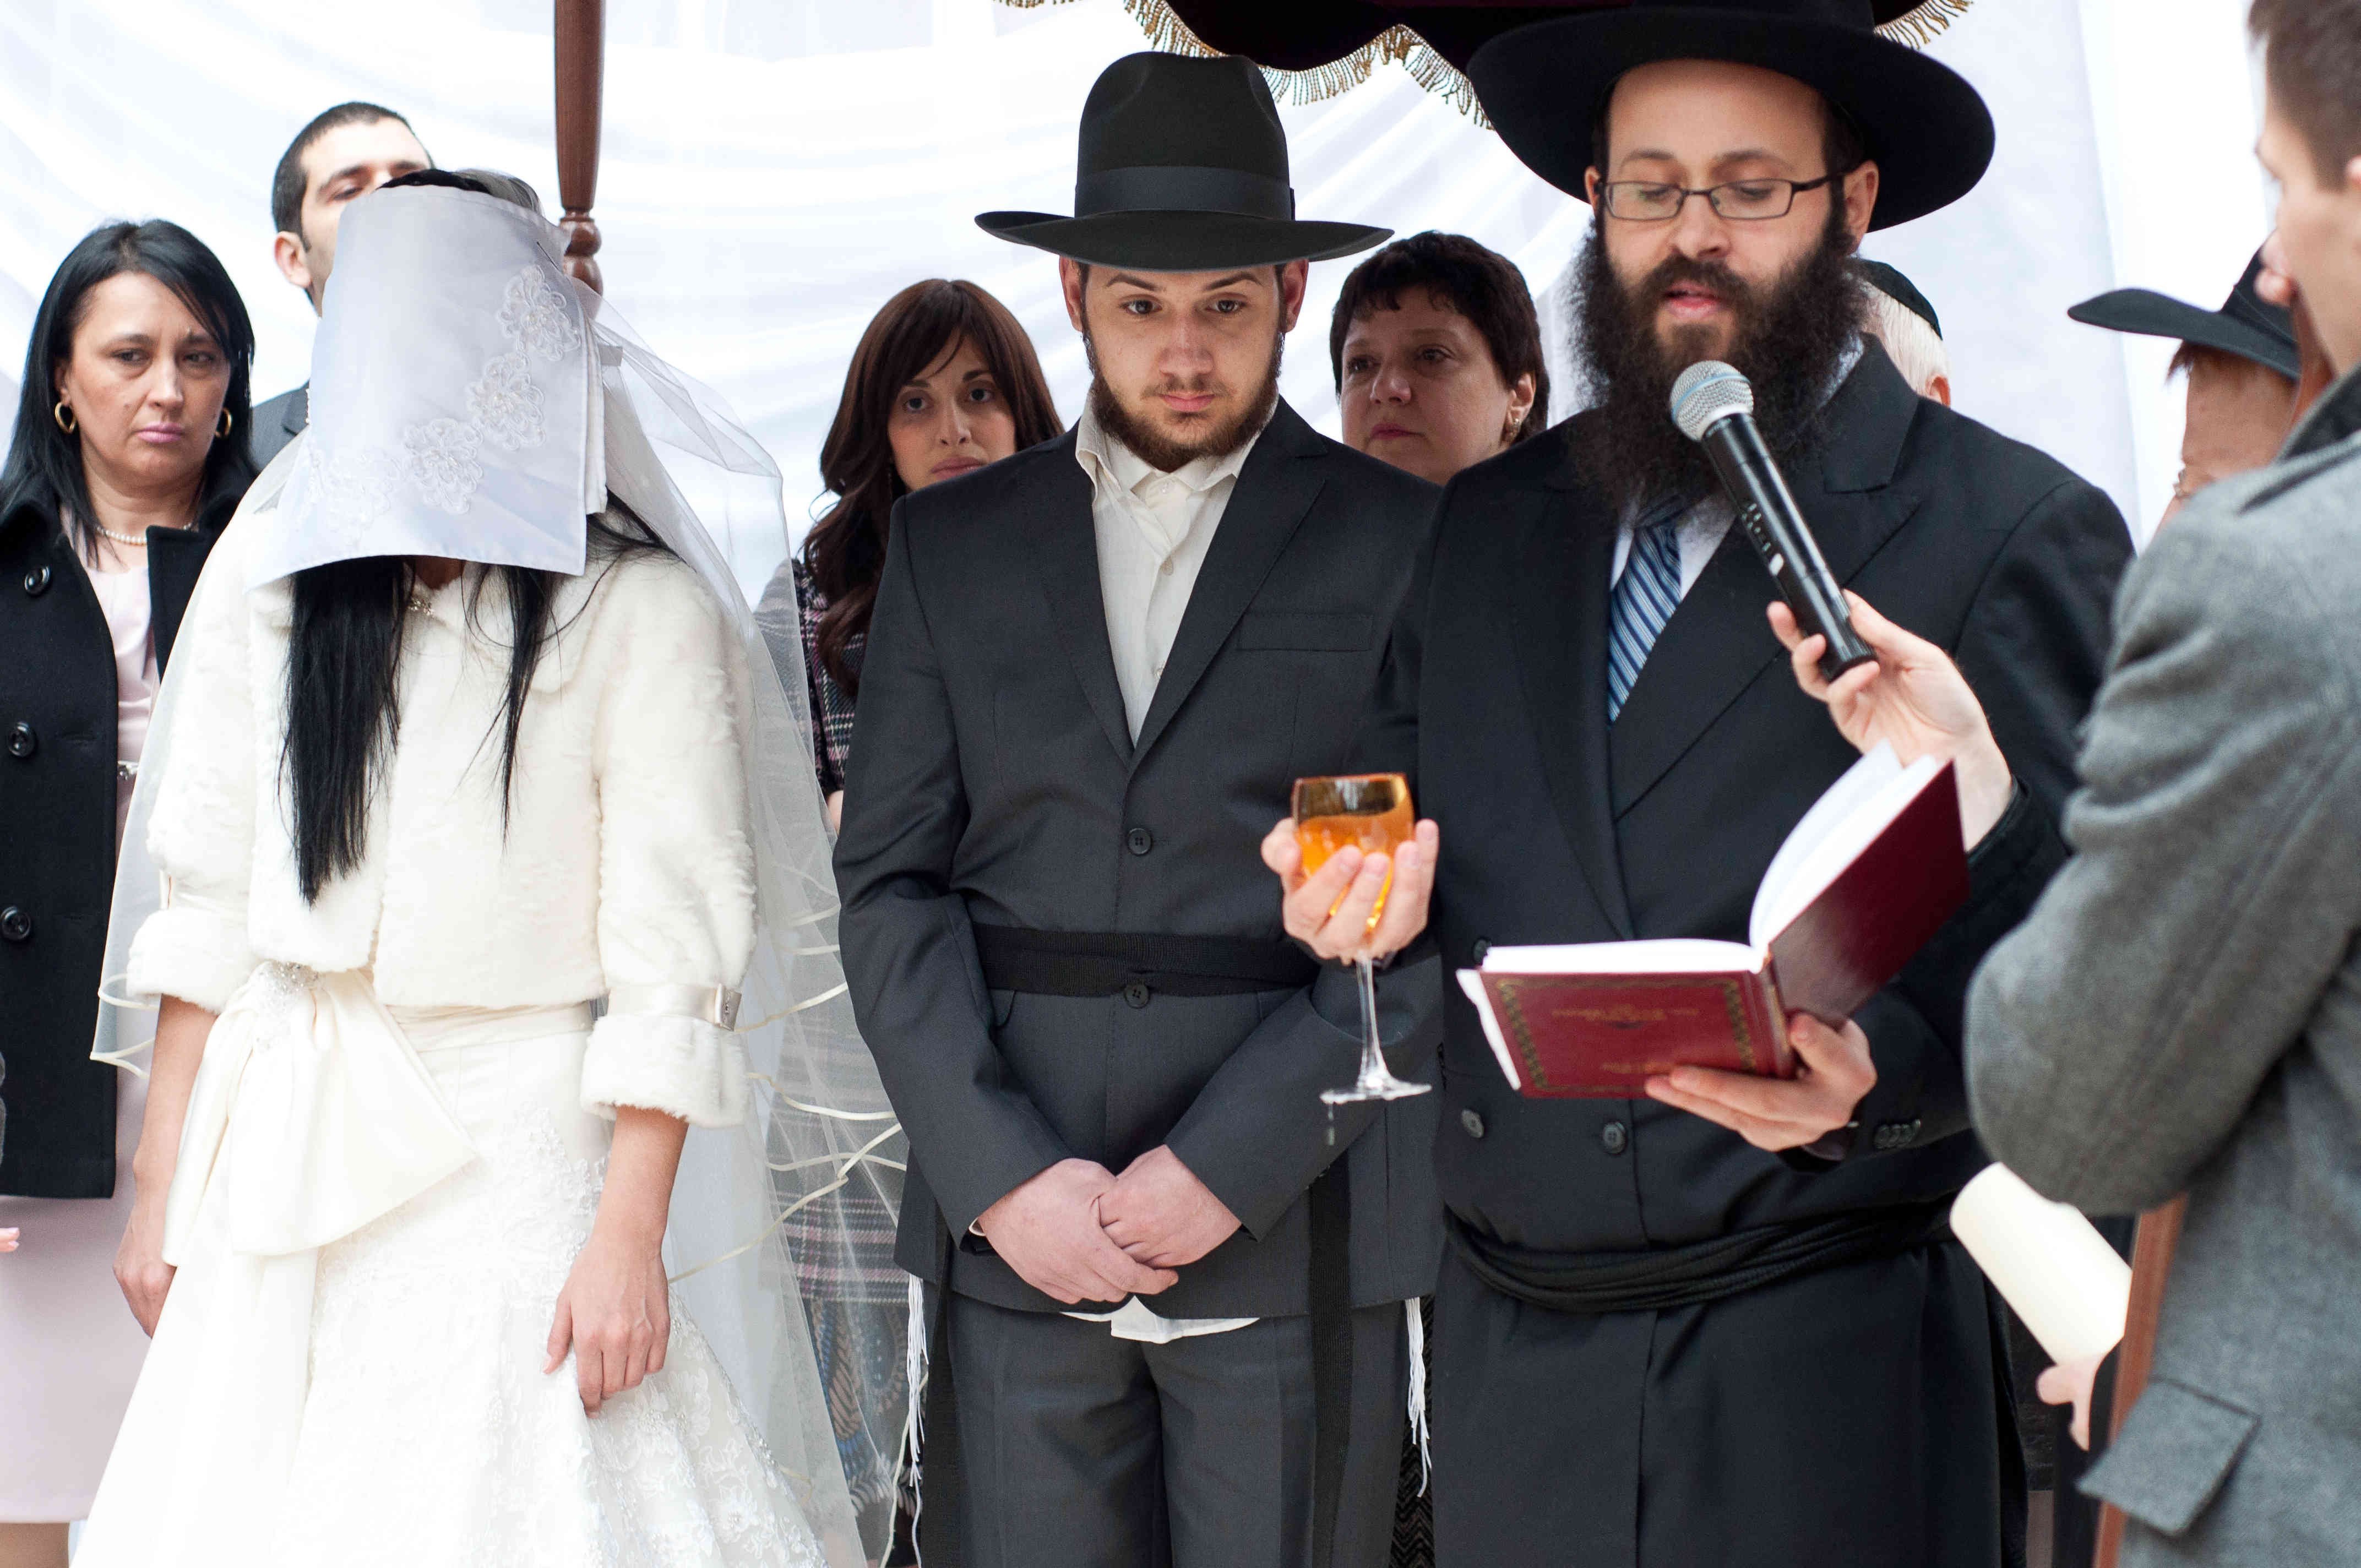 Агаларов национальность еврей. Ортодоксальная Еврейская свадьба. Еврейская свадьба под хупой. Одежда ортодоксов в Израиле.